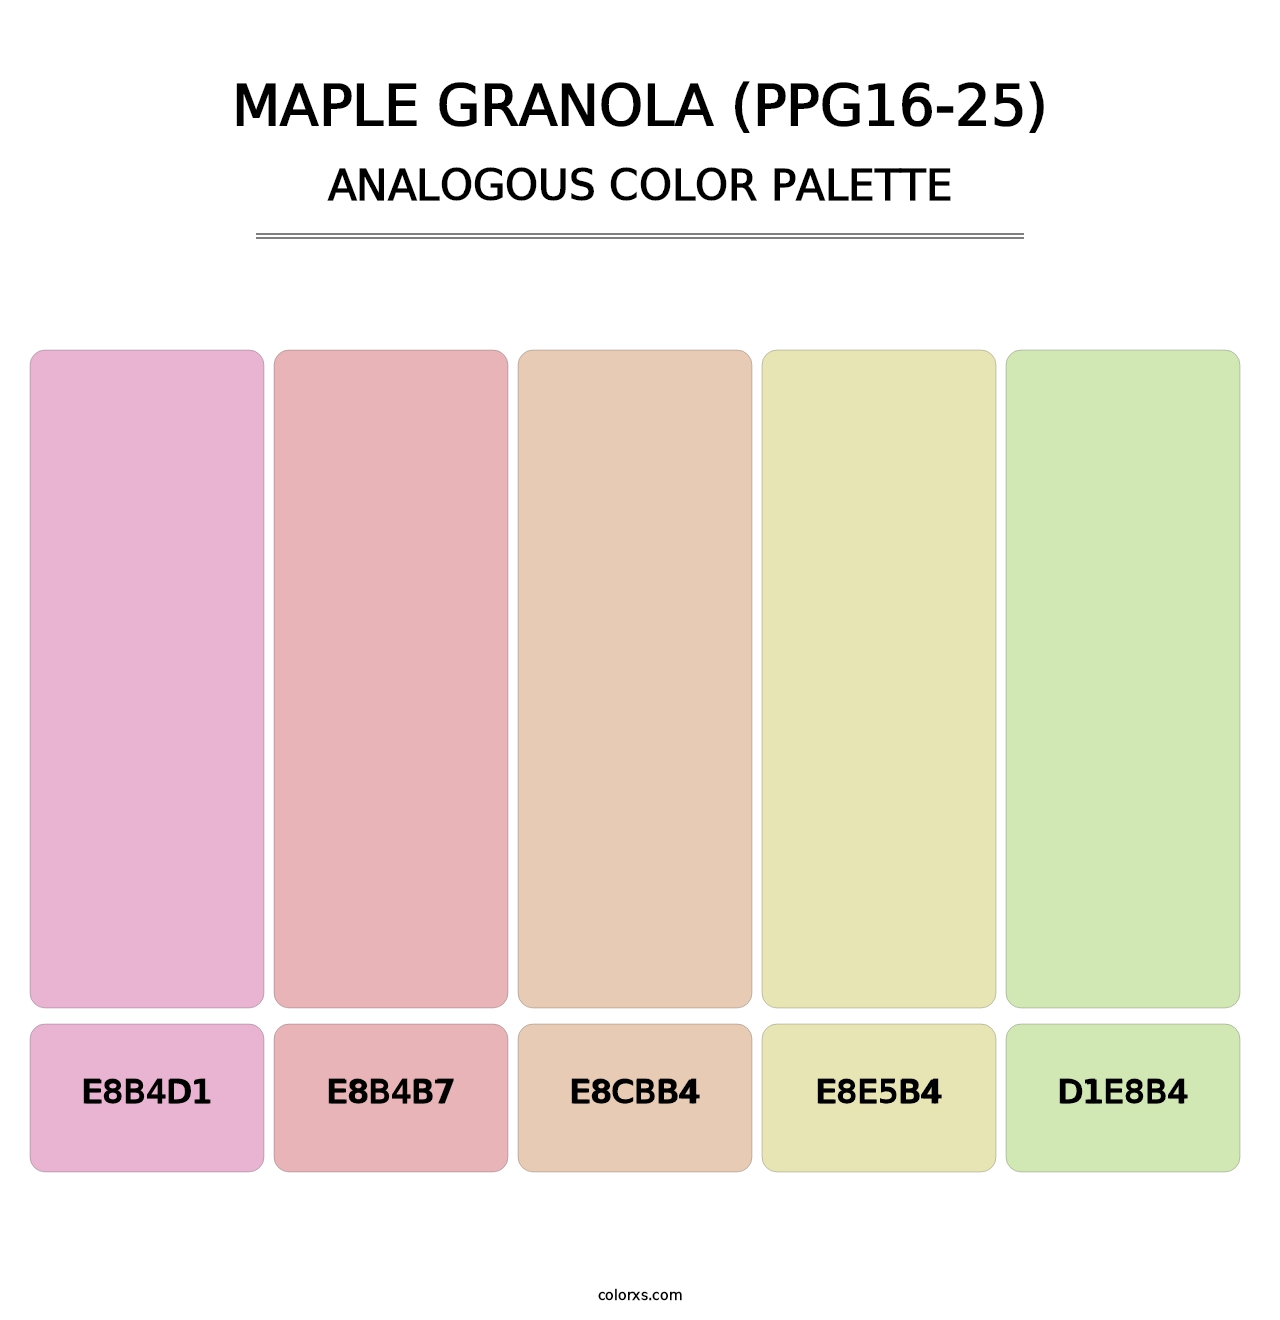 Maple Granola (PPG16-25) - Analogous Color Palette